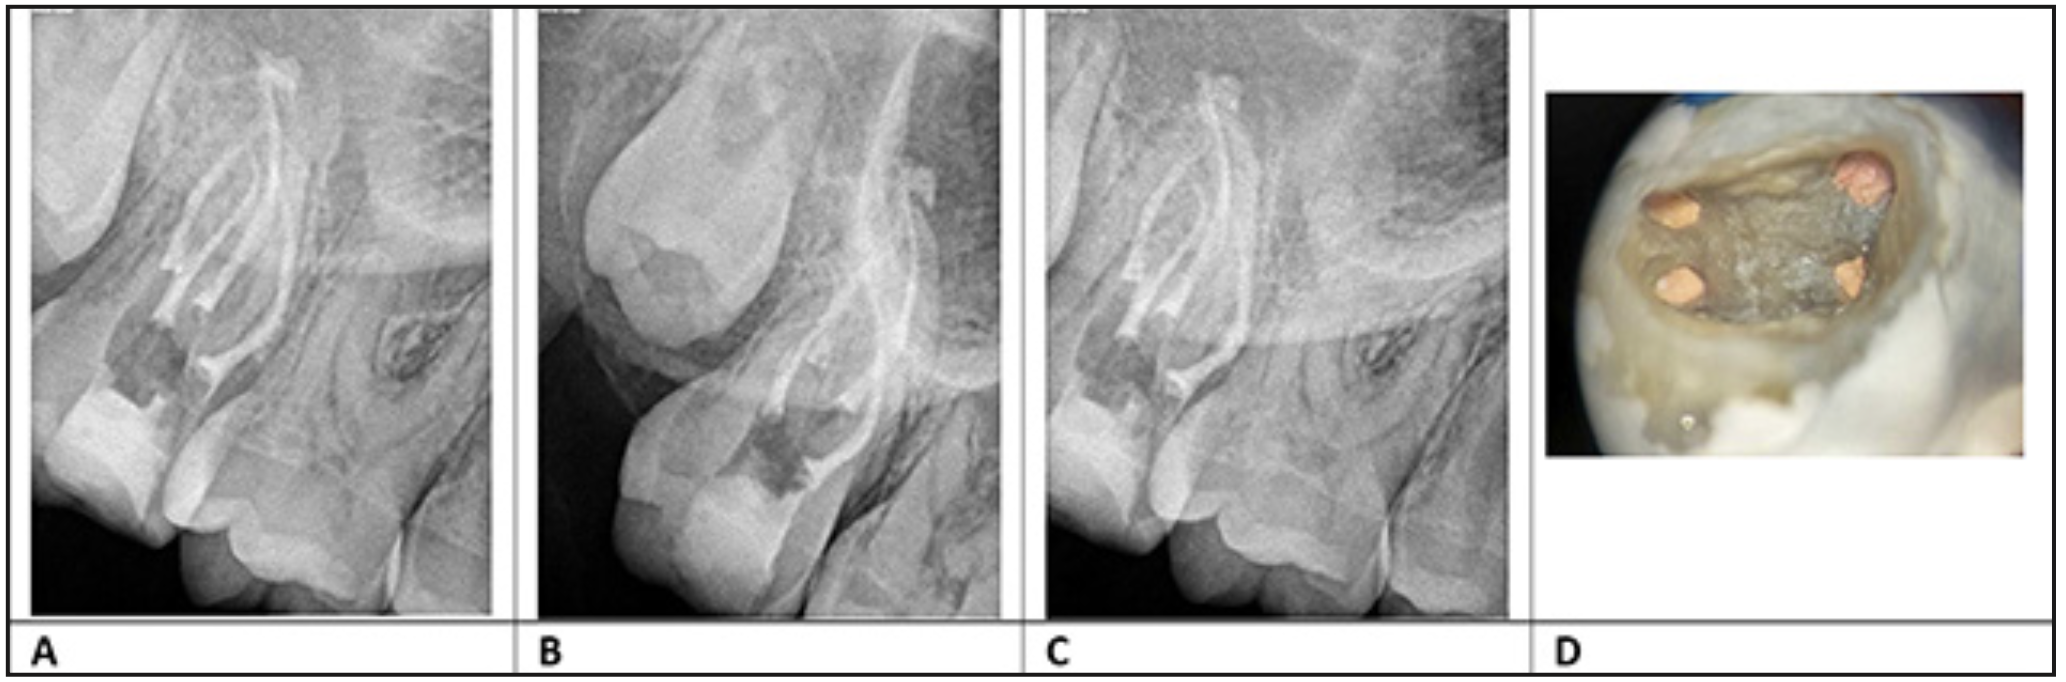 Figura 4. Radiografías de obturación diente 1.7 A): radiografía ortoradial B): radiografía mesializadas C): radiografía distalizada D): fotografía de 4 canales obturados